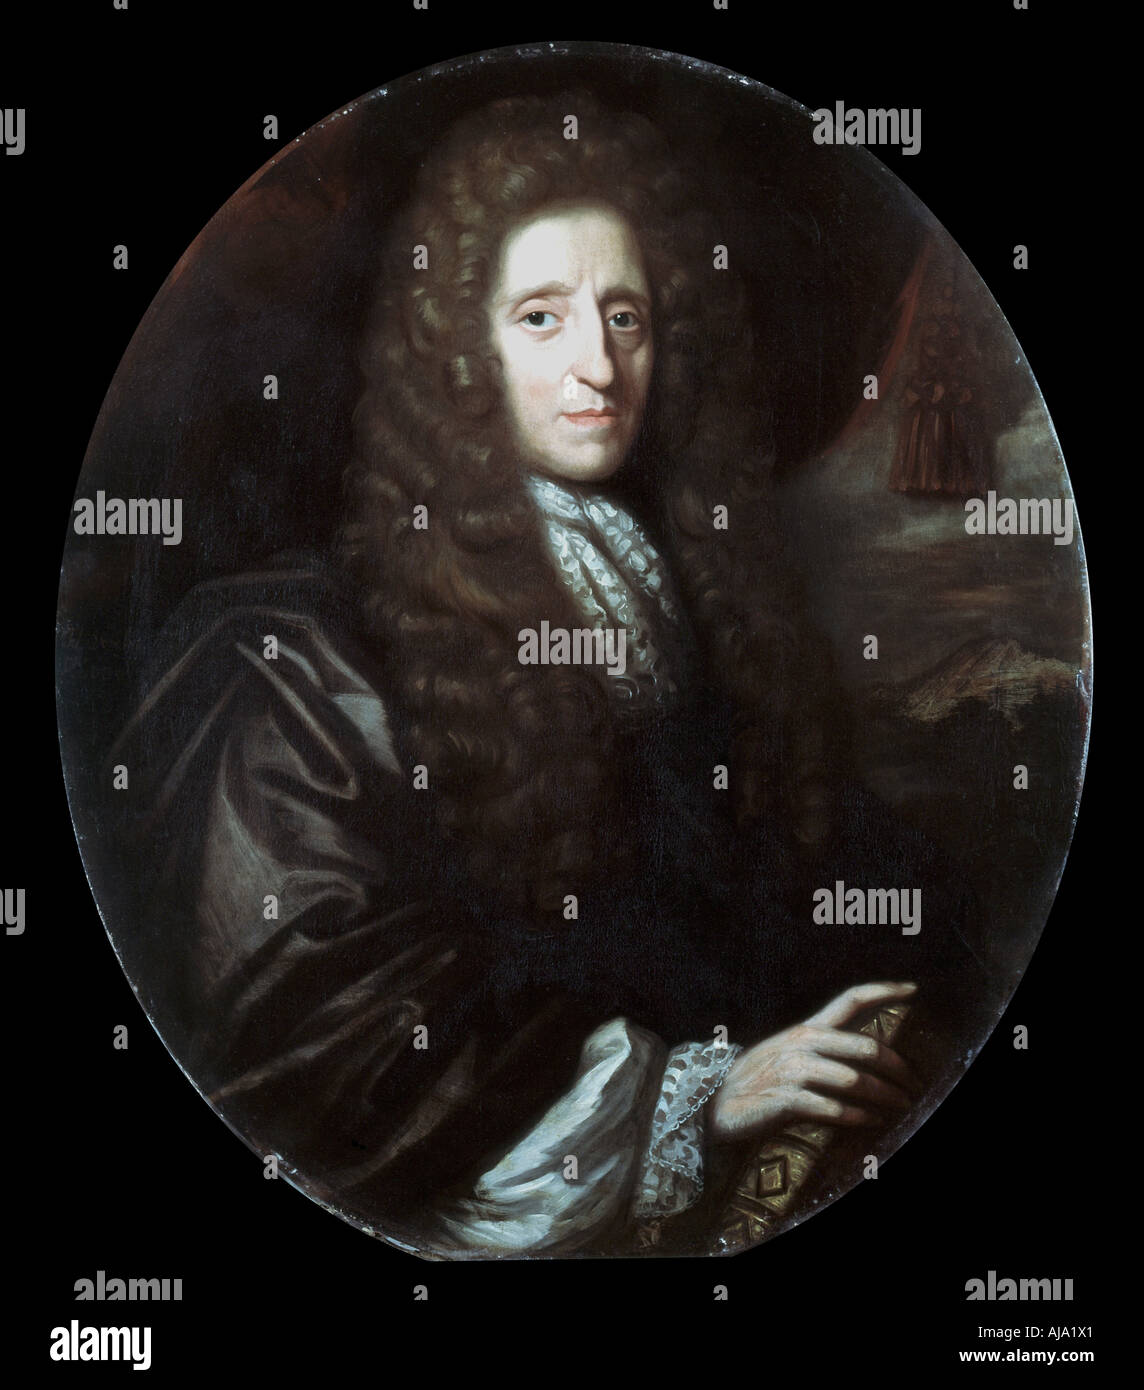 John Locke, filósofo inglés, 1689. Artista: Verelst Harman Foto de stock